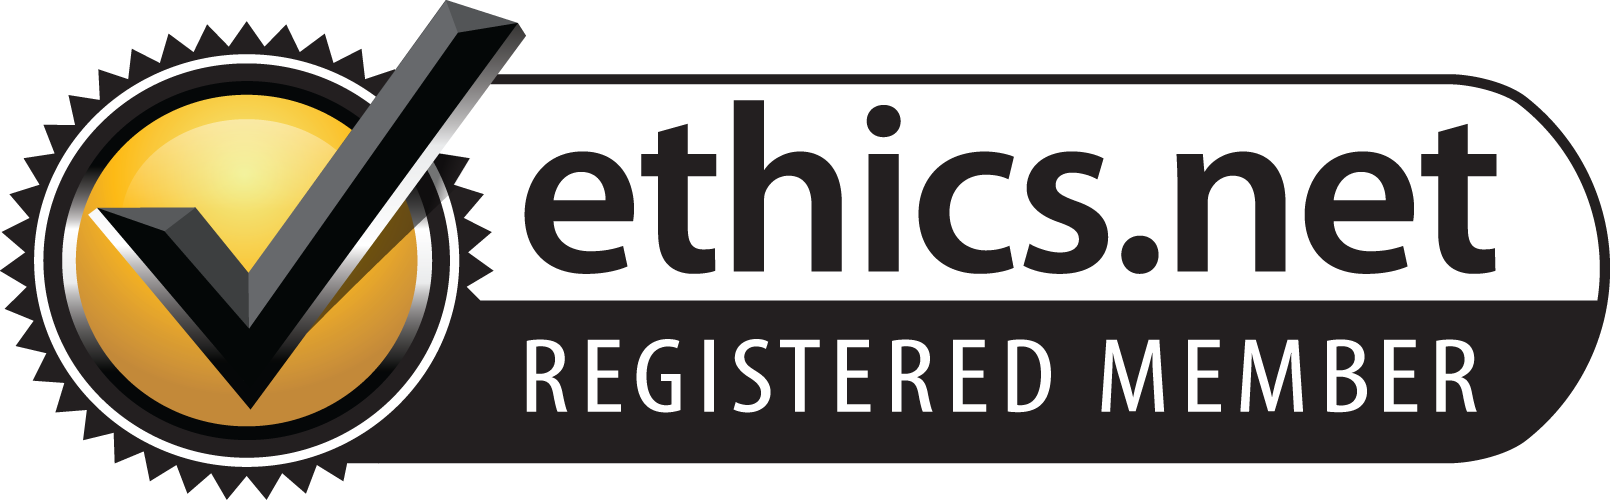 Registered Member - ethics.net